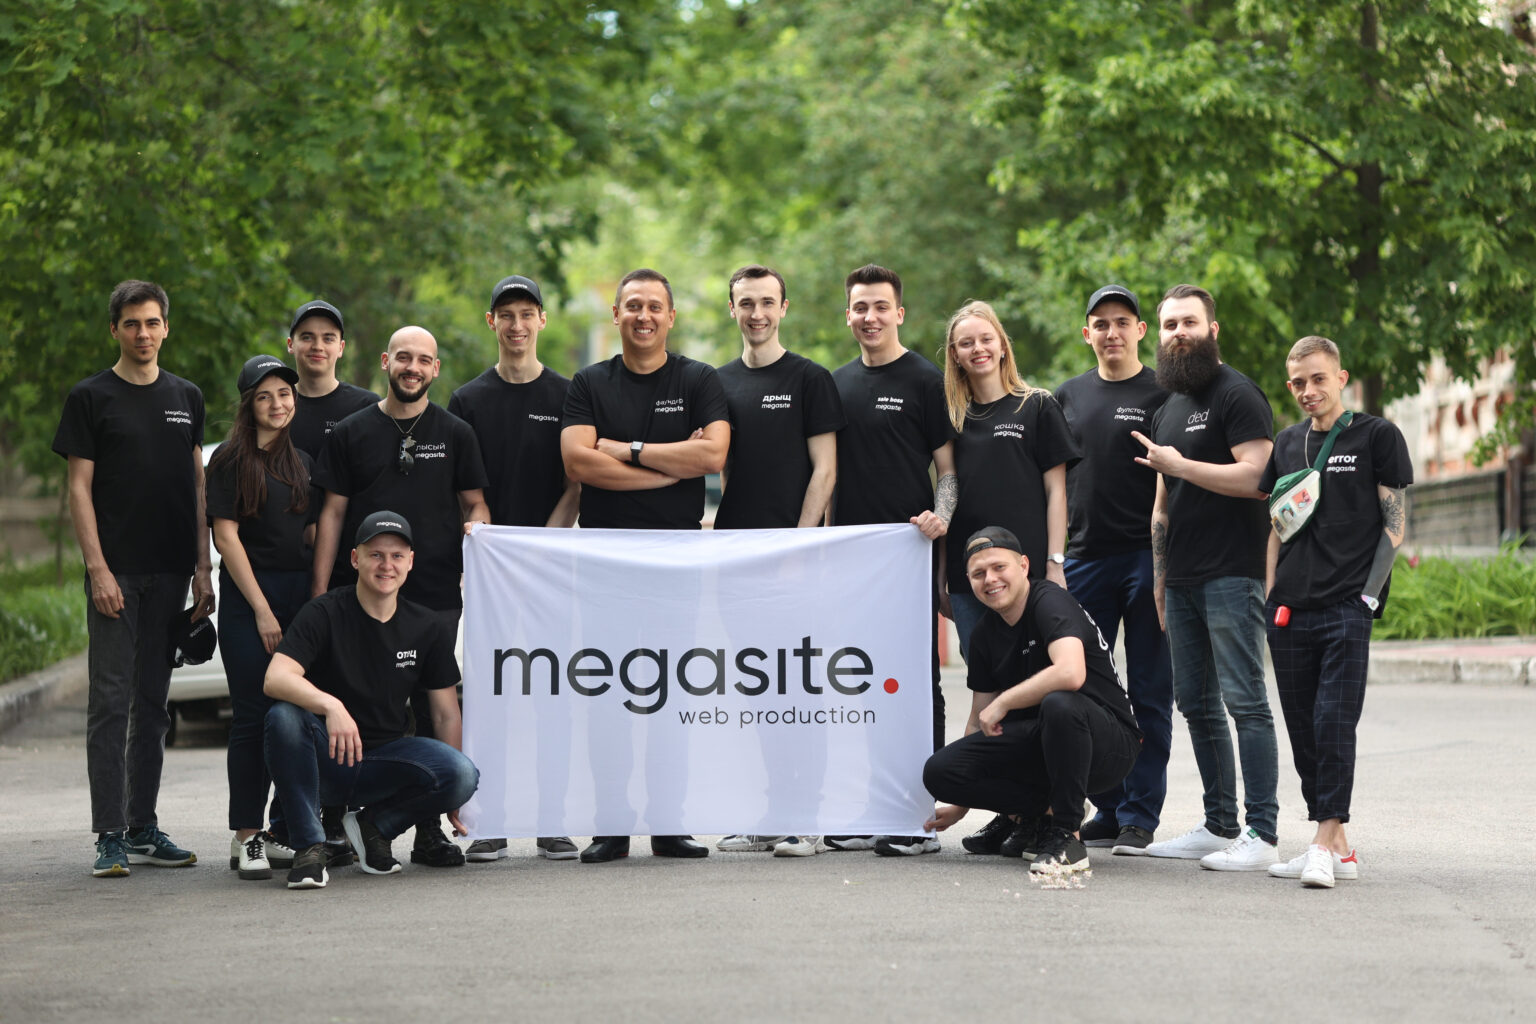 Team MEGASITE